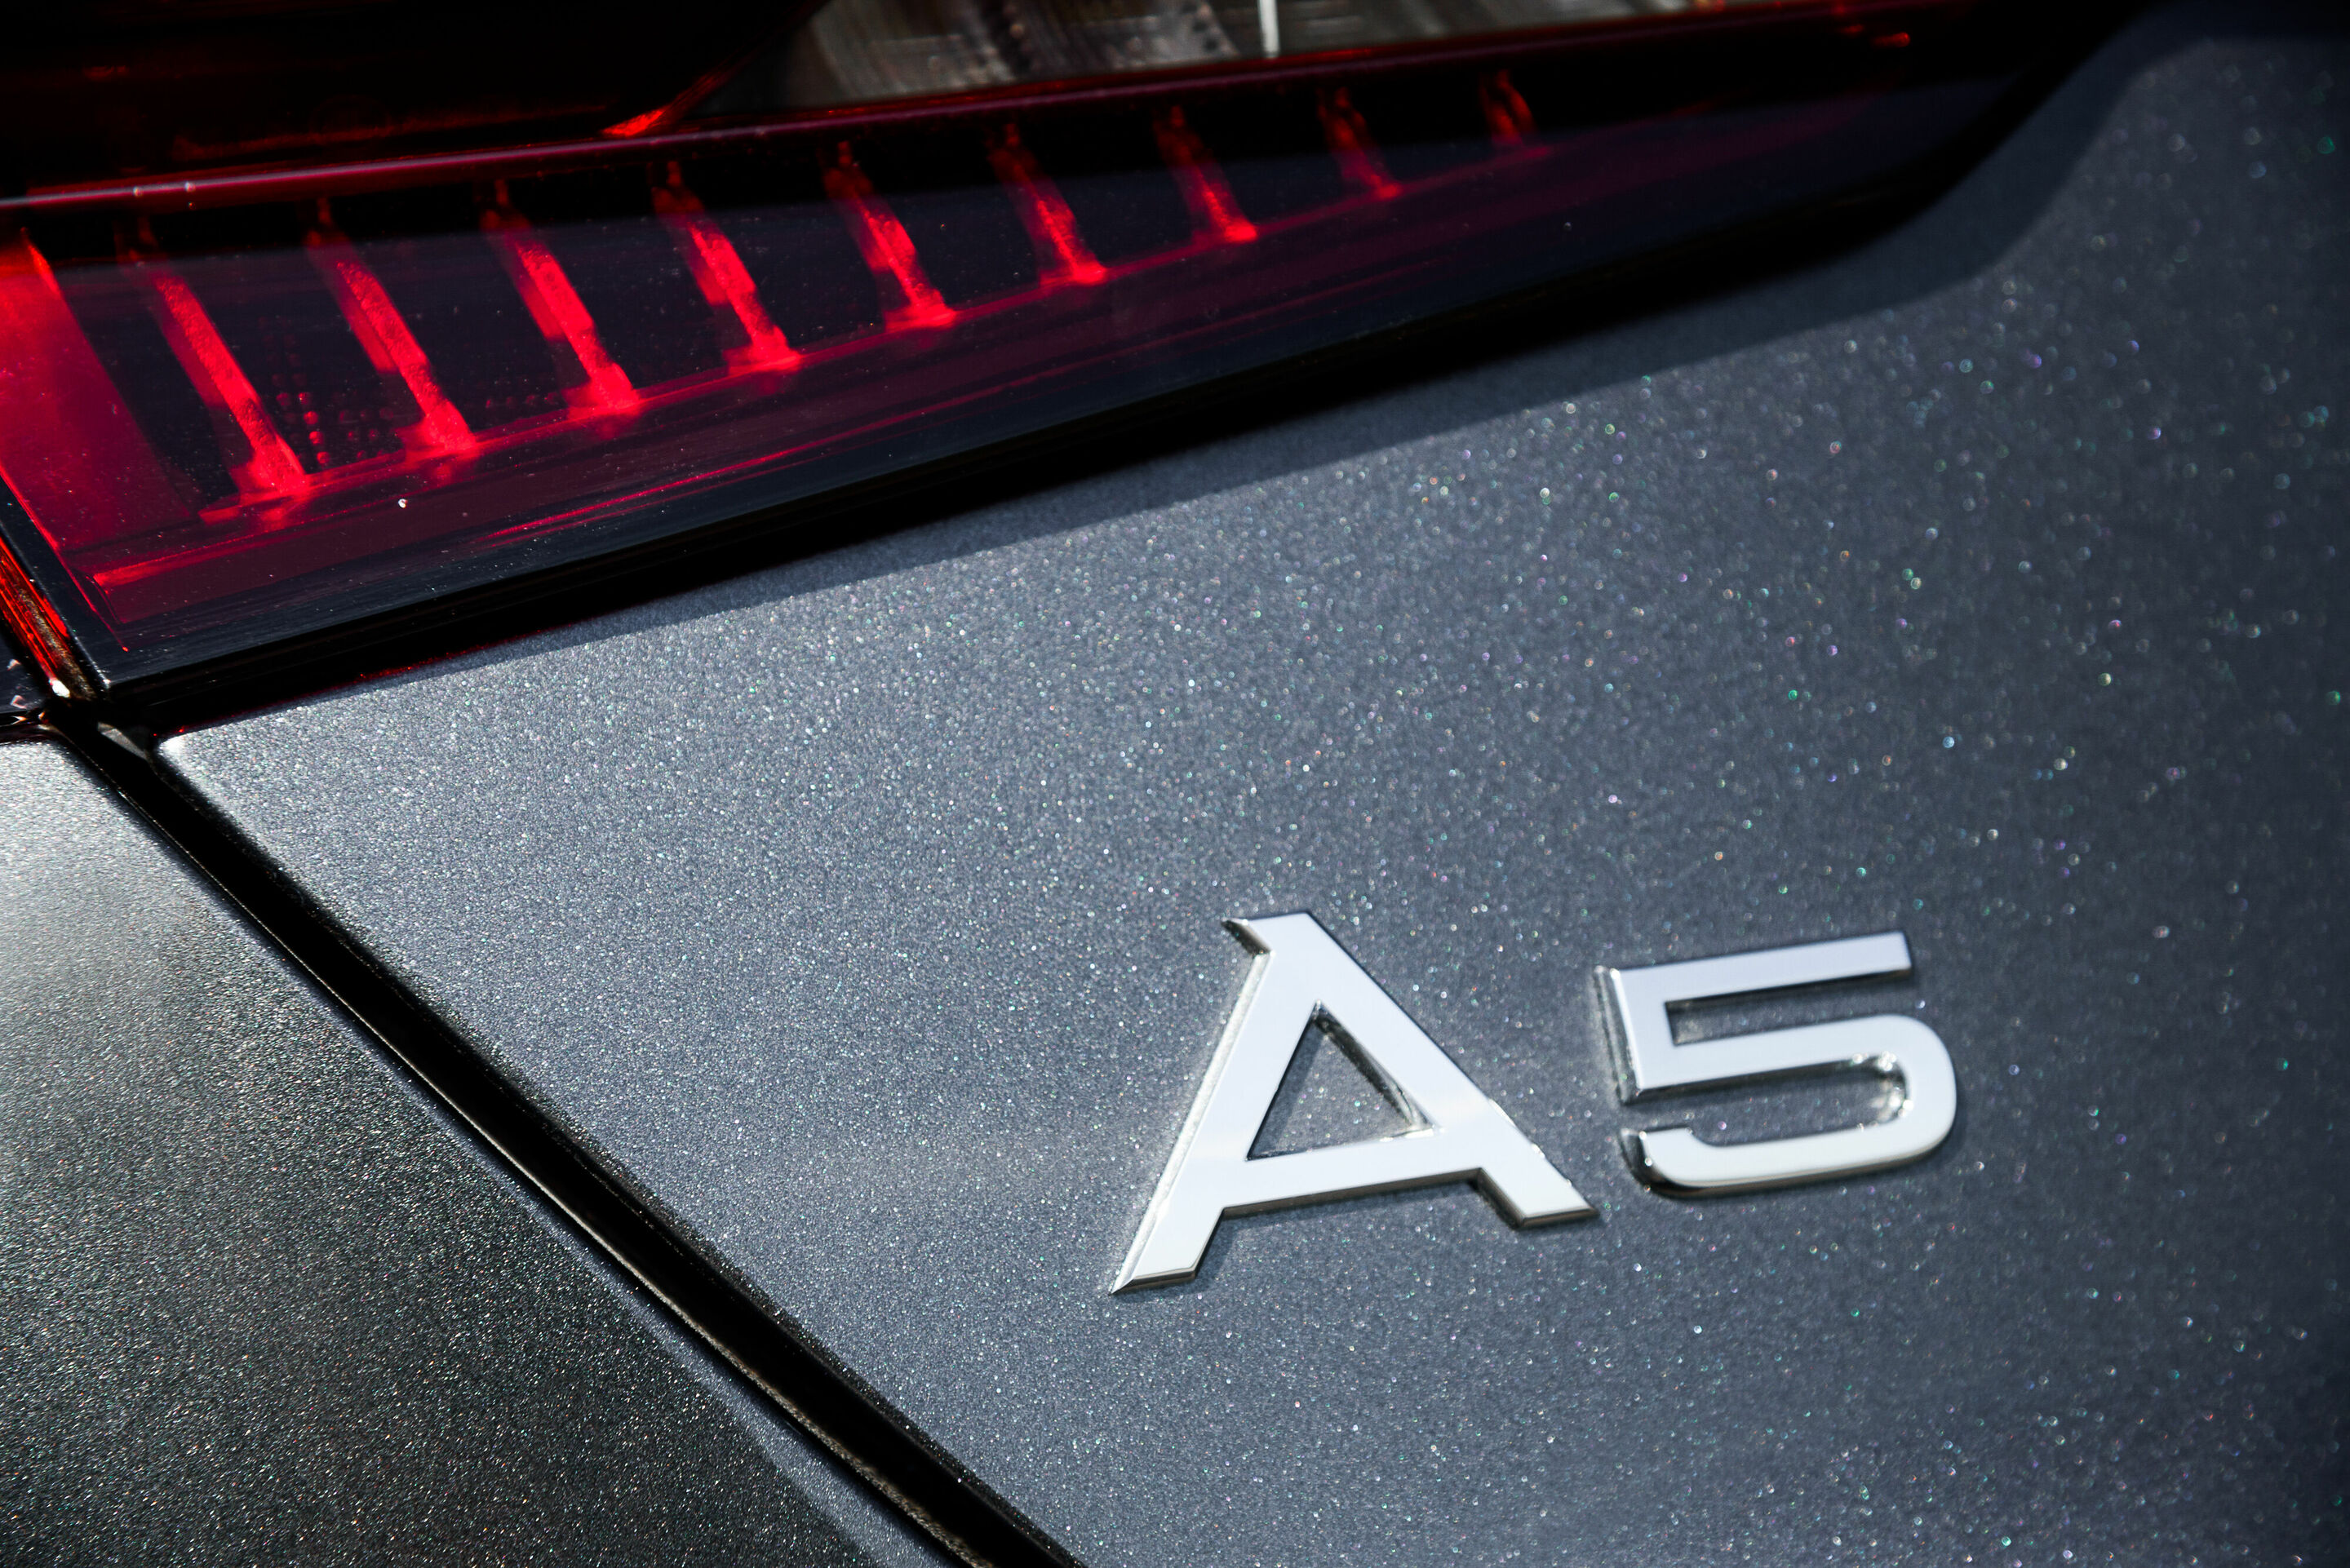 Audi A5 Sportback g-tron